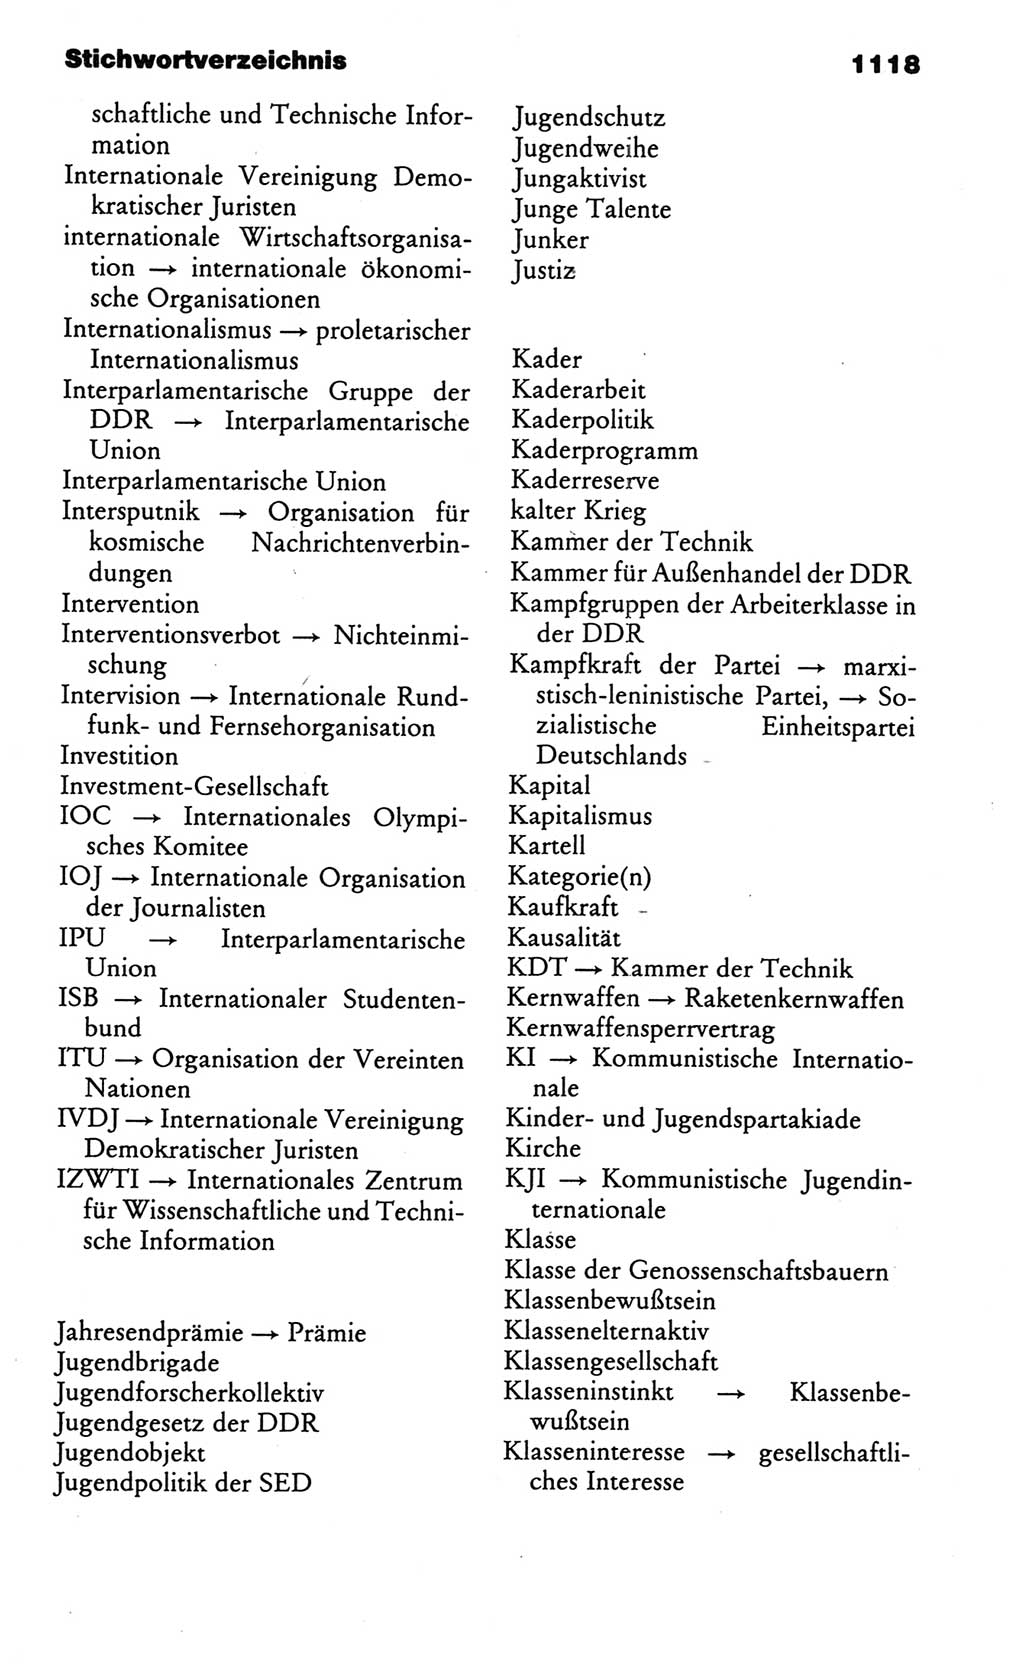 Kleines politisches Wörterbuch [Deutsche Demokratische Republik (DDR)] 1986, Seite 1118 (Kl. pol. Wb. DDR 1986, S. 1118)